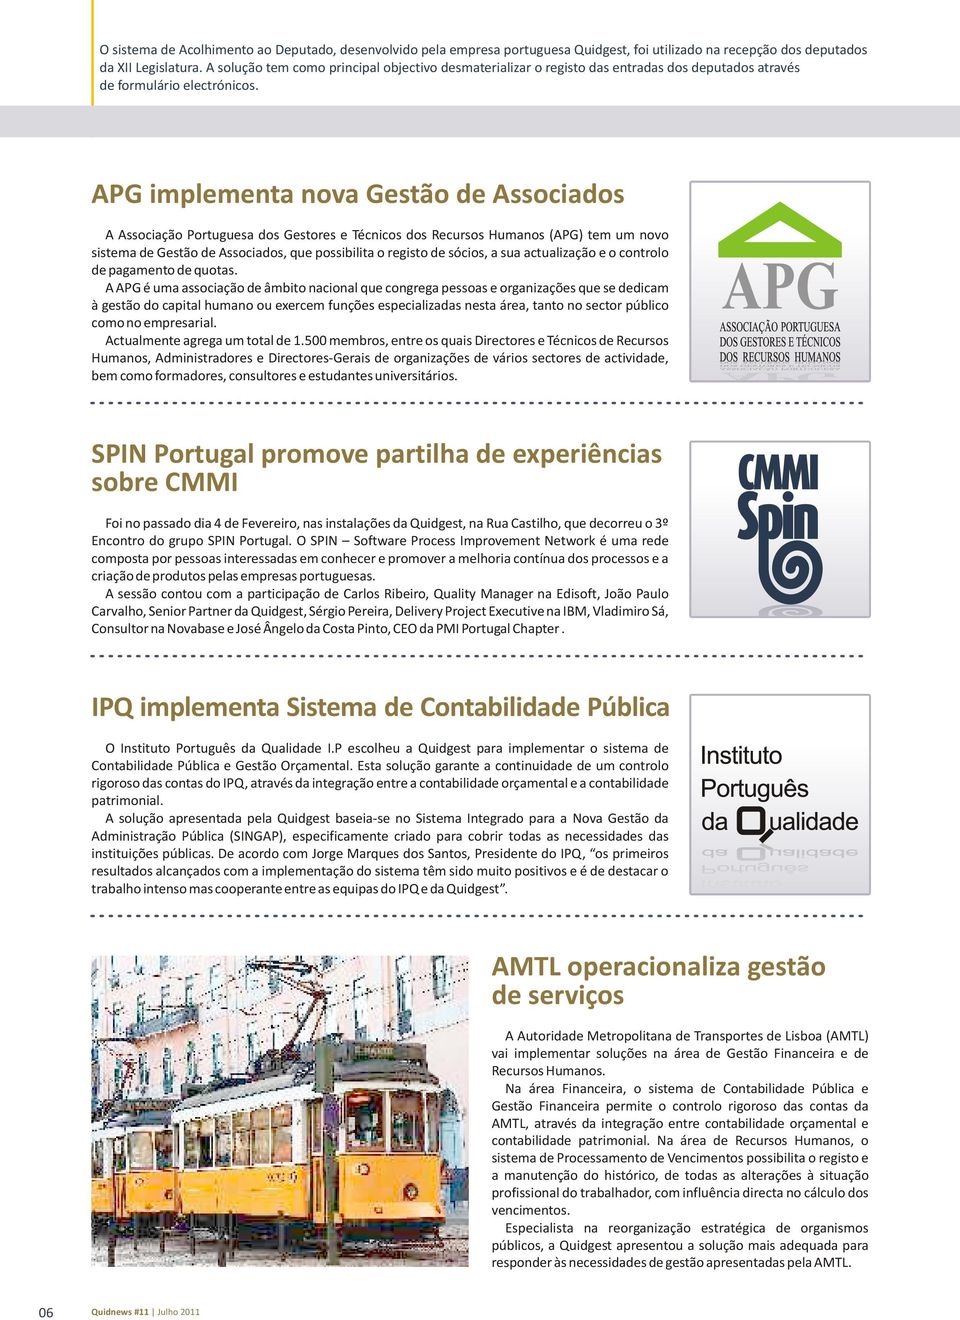 APG implementa nova Gestão de Associados A Associação Portuguesa dos Gestores e Técnicos dos Recursos Humanos (APG) tem um novo sistema de Gestão de Associados, que possibilita o registo de sócios, a